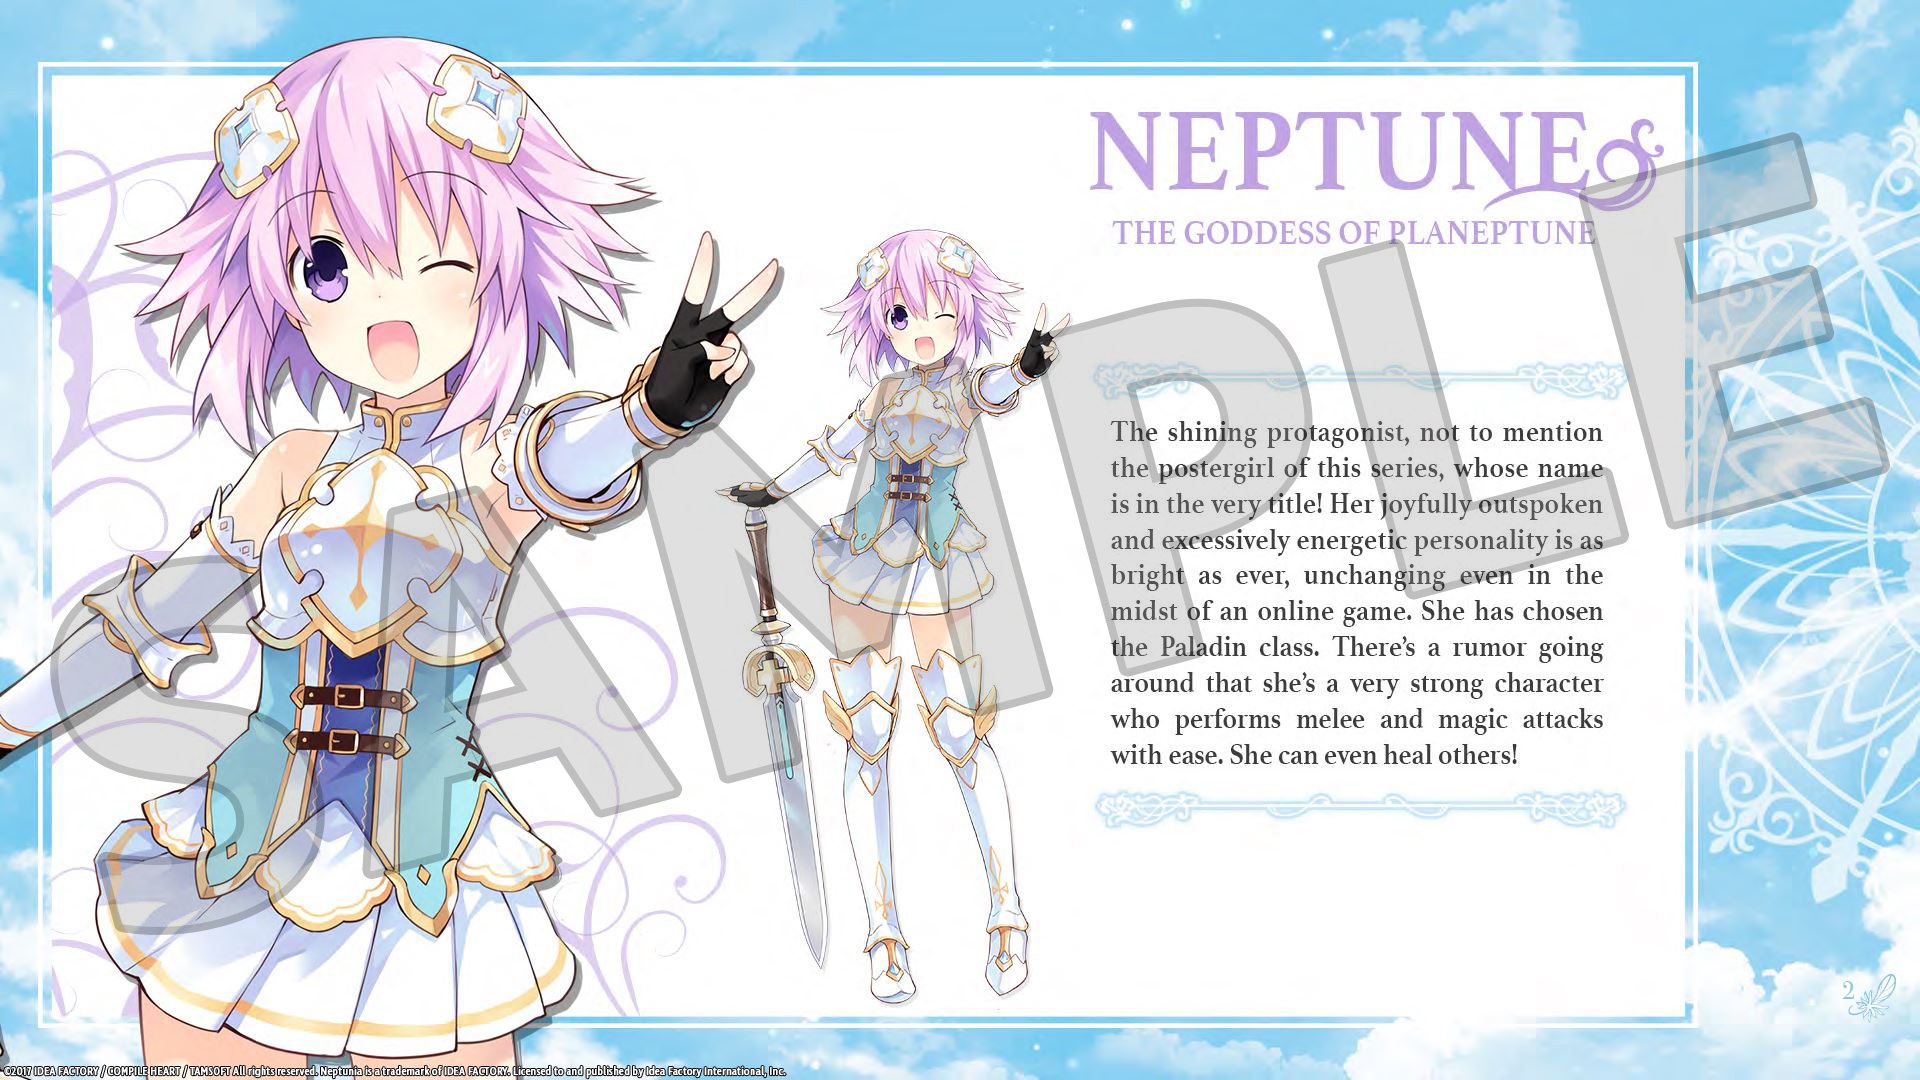 Cyberdimension Neptunia: 4 Goddesses Online - Deluxe Pack DLC Steam CD Key 1.69 $